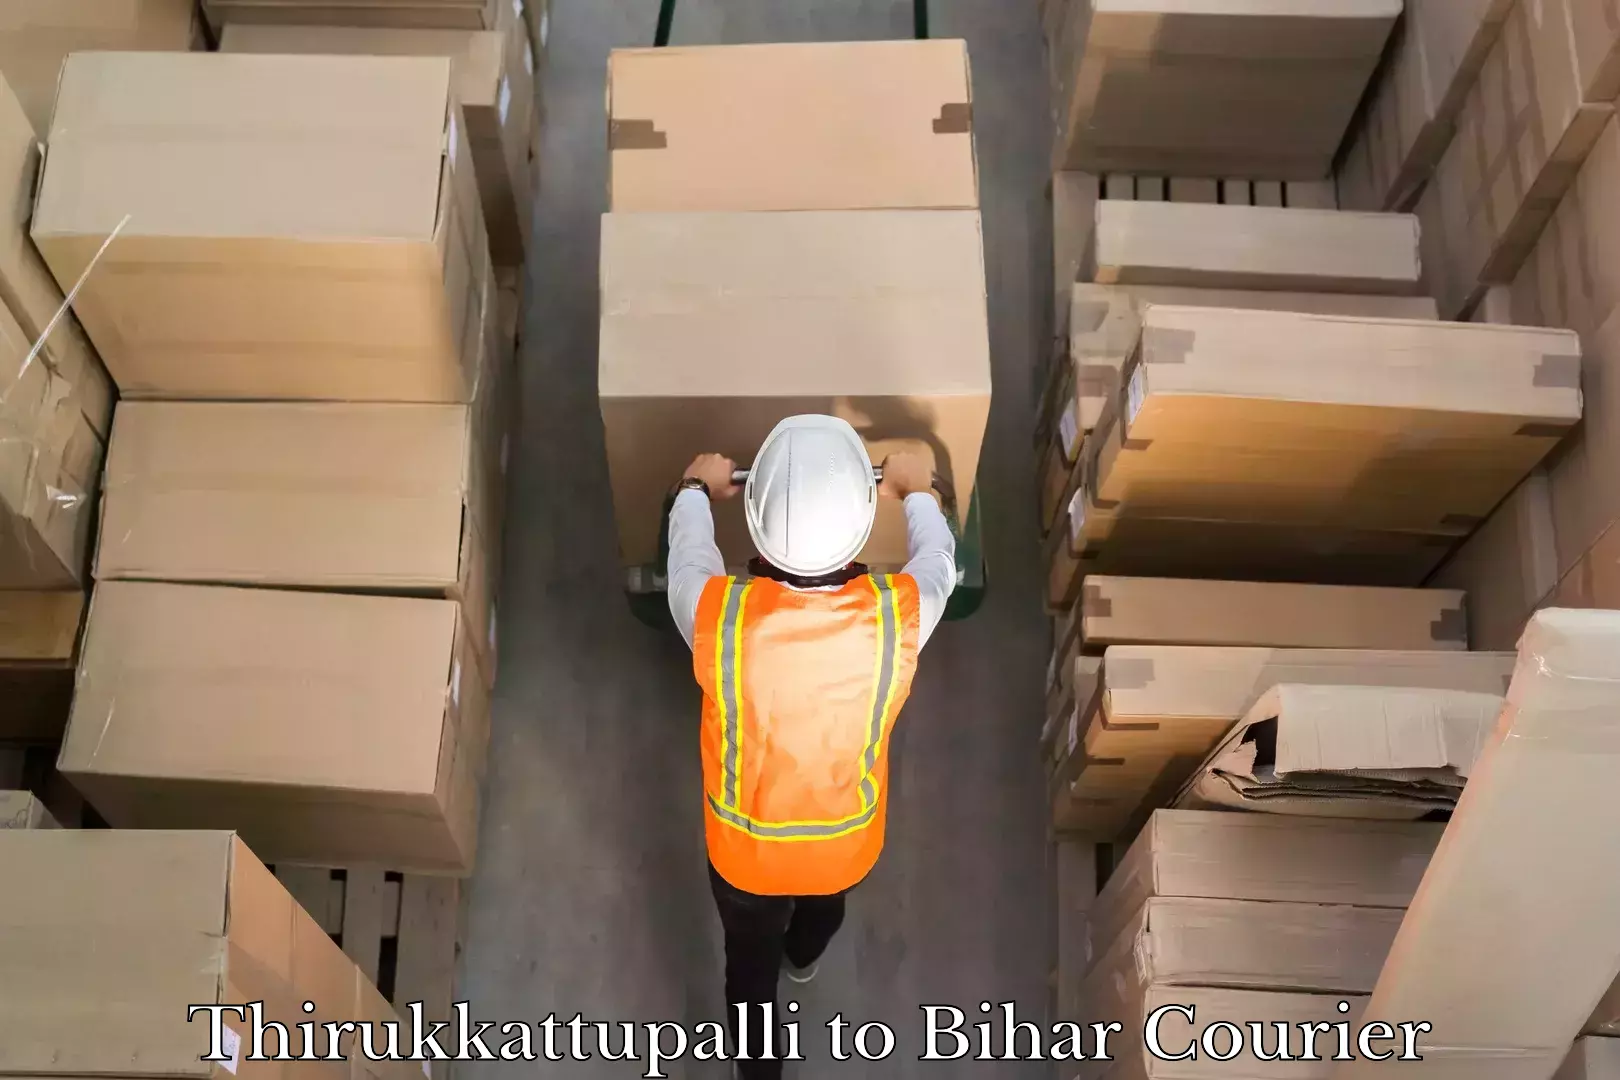 Quick courier services in Thirukkattupalli to Bihar